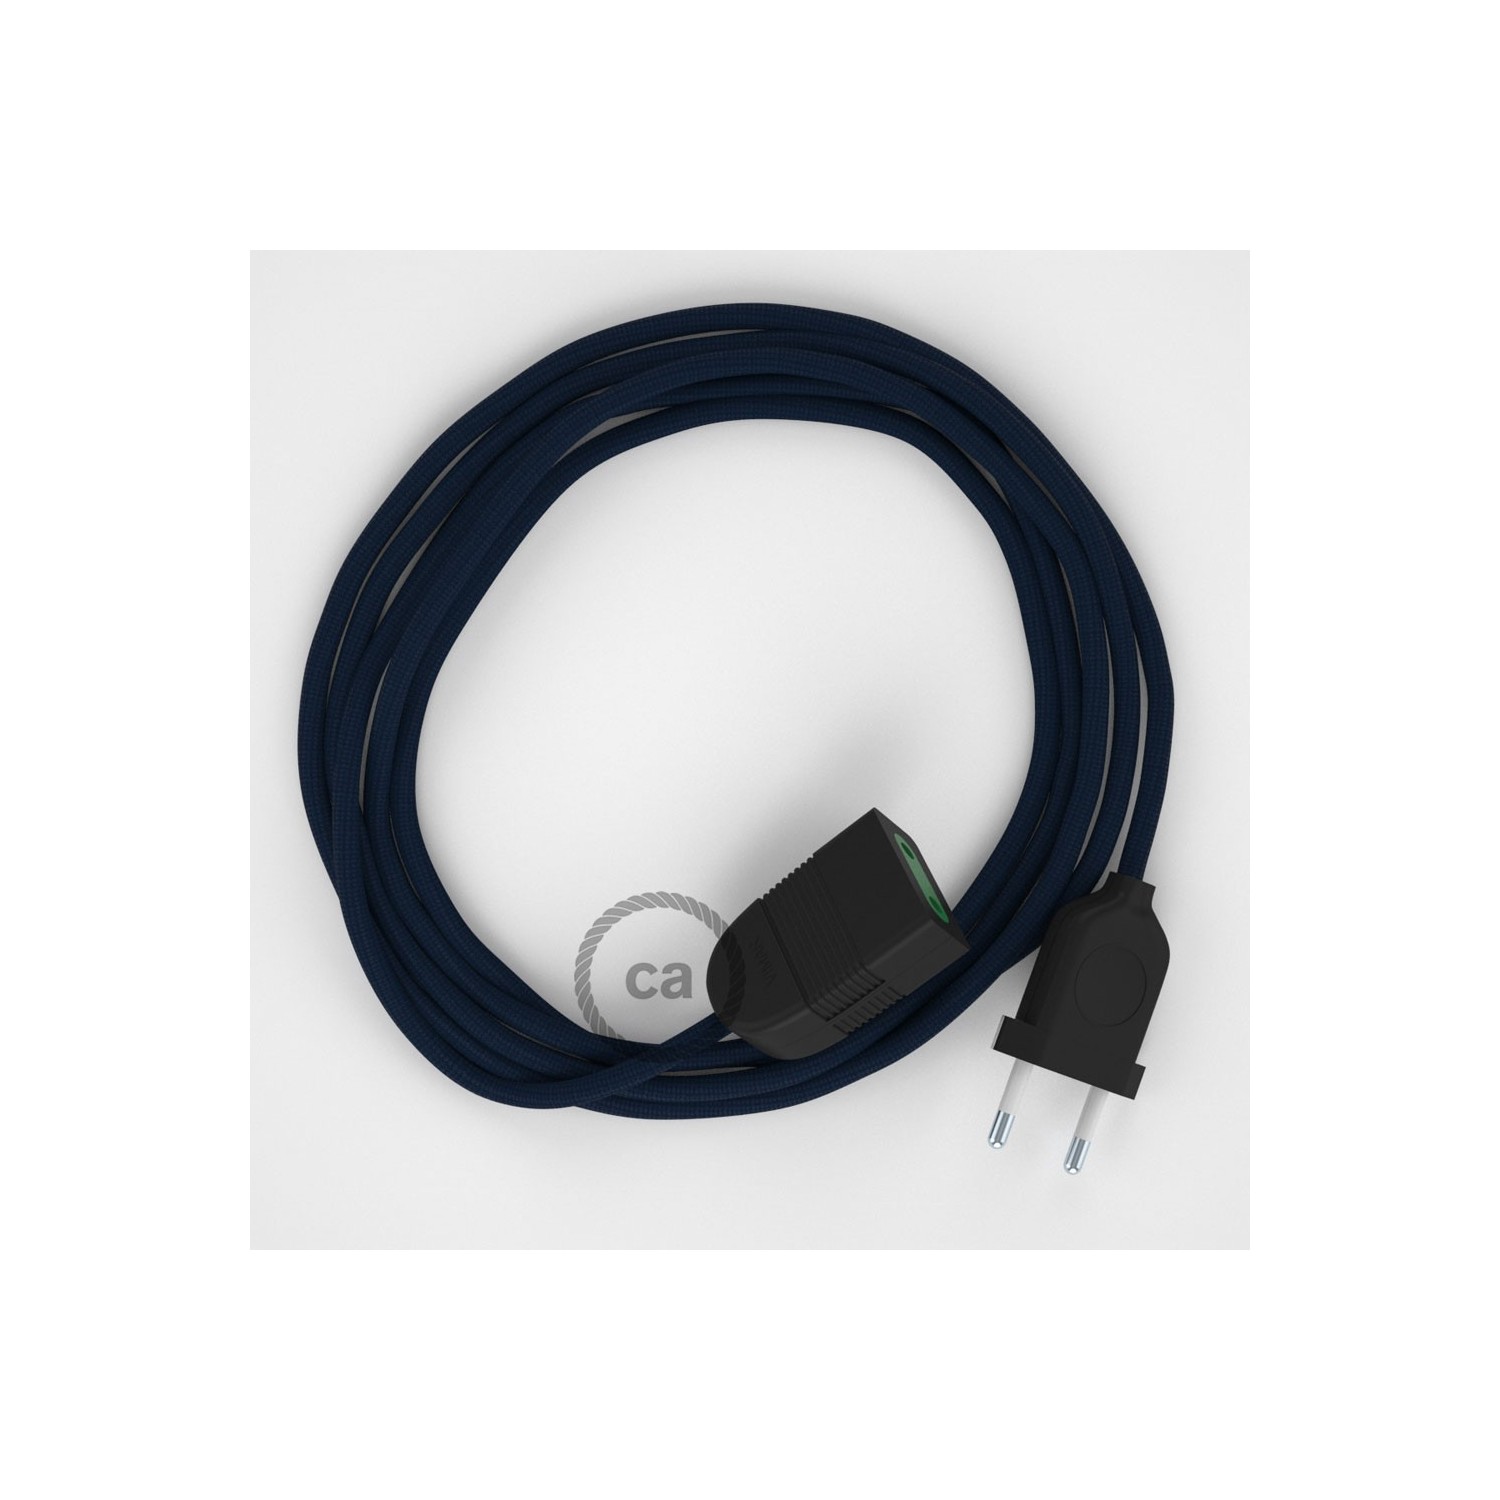 Verlengkabel 2P 10A met rond flexibel strijkijzersnoer RM20 van donkerblauw viscose